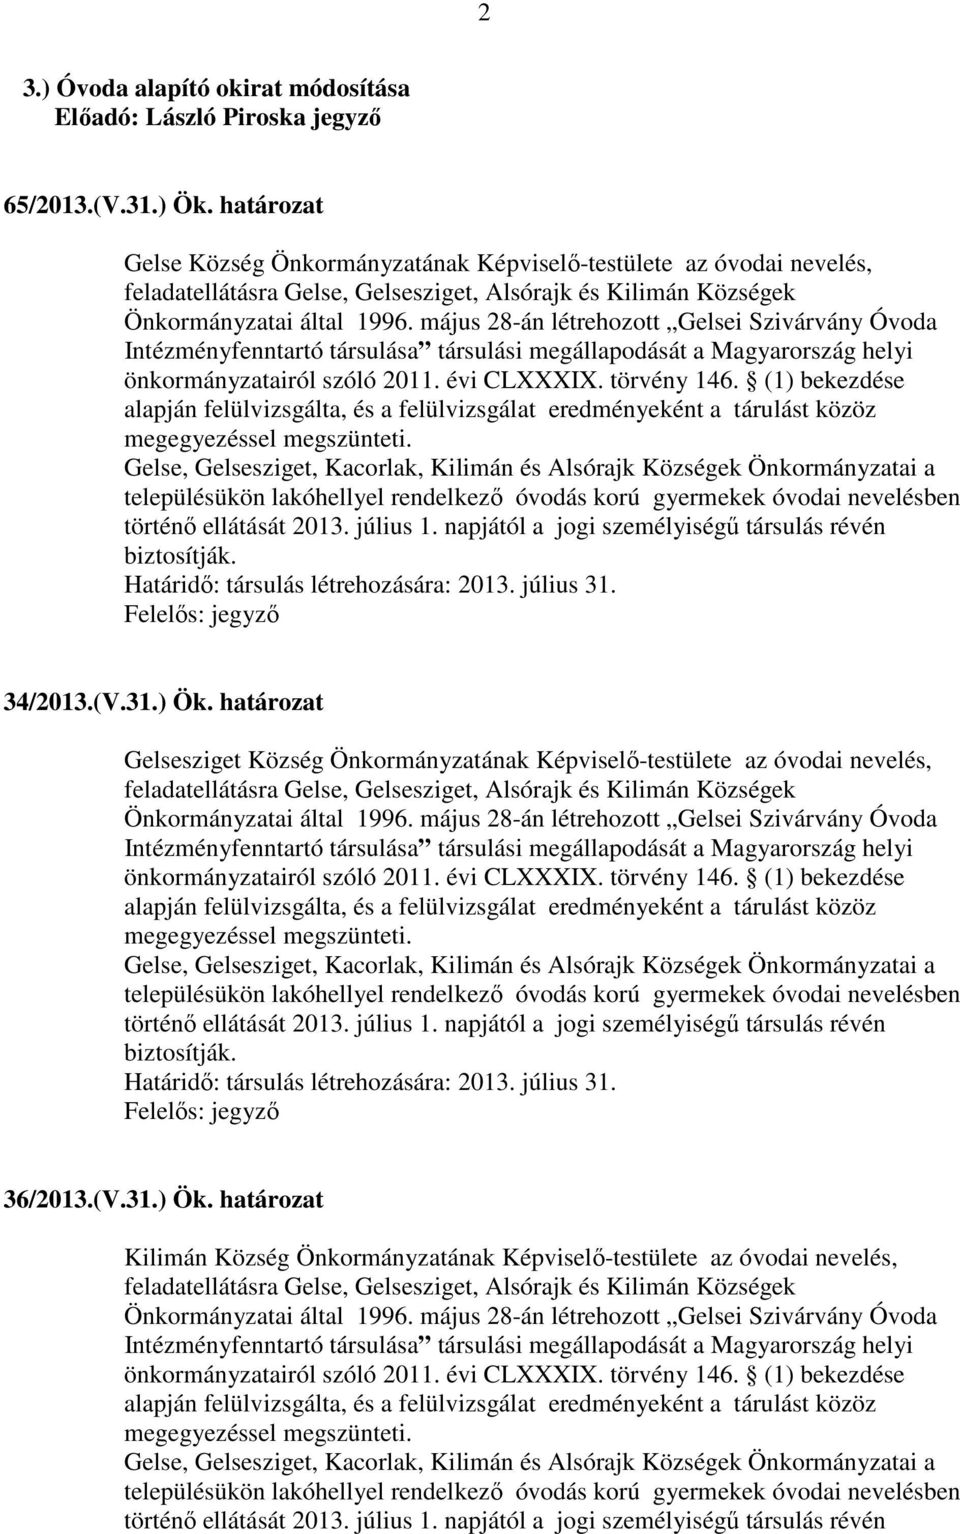 május 28-án létrehozott Gelsei Szivárvány Óvoda Intézményfenntartó társulása társulási megállapodását a Magyarország helyi önkormányzatairól szóló 2011. évi CLXXXIX. törvény 146.